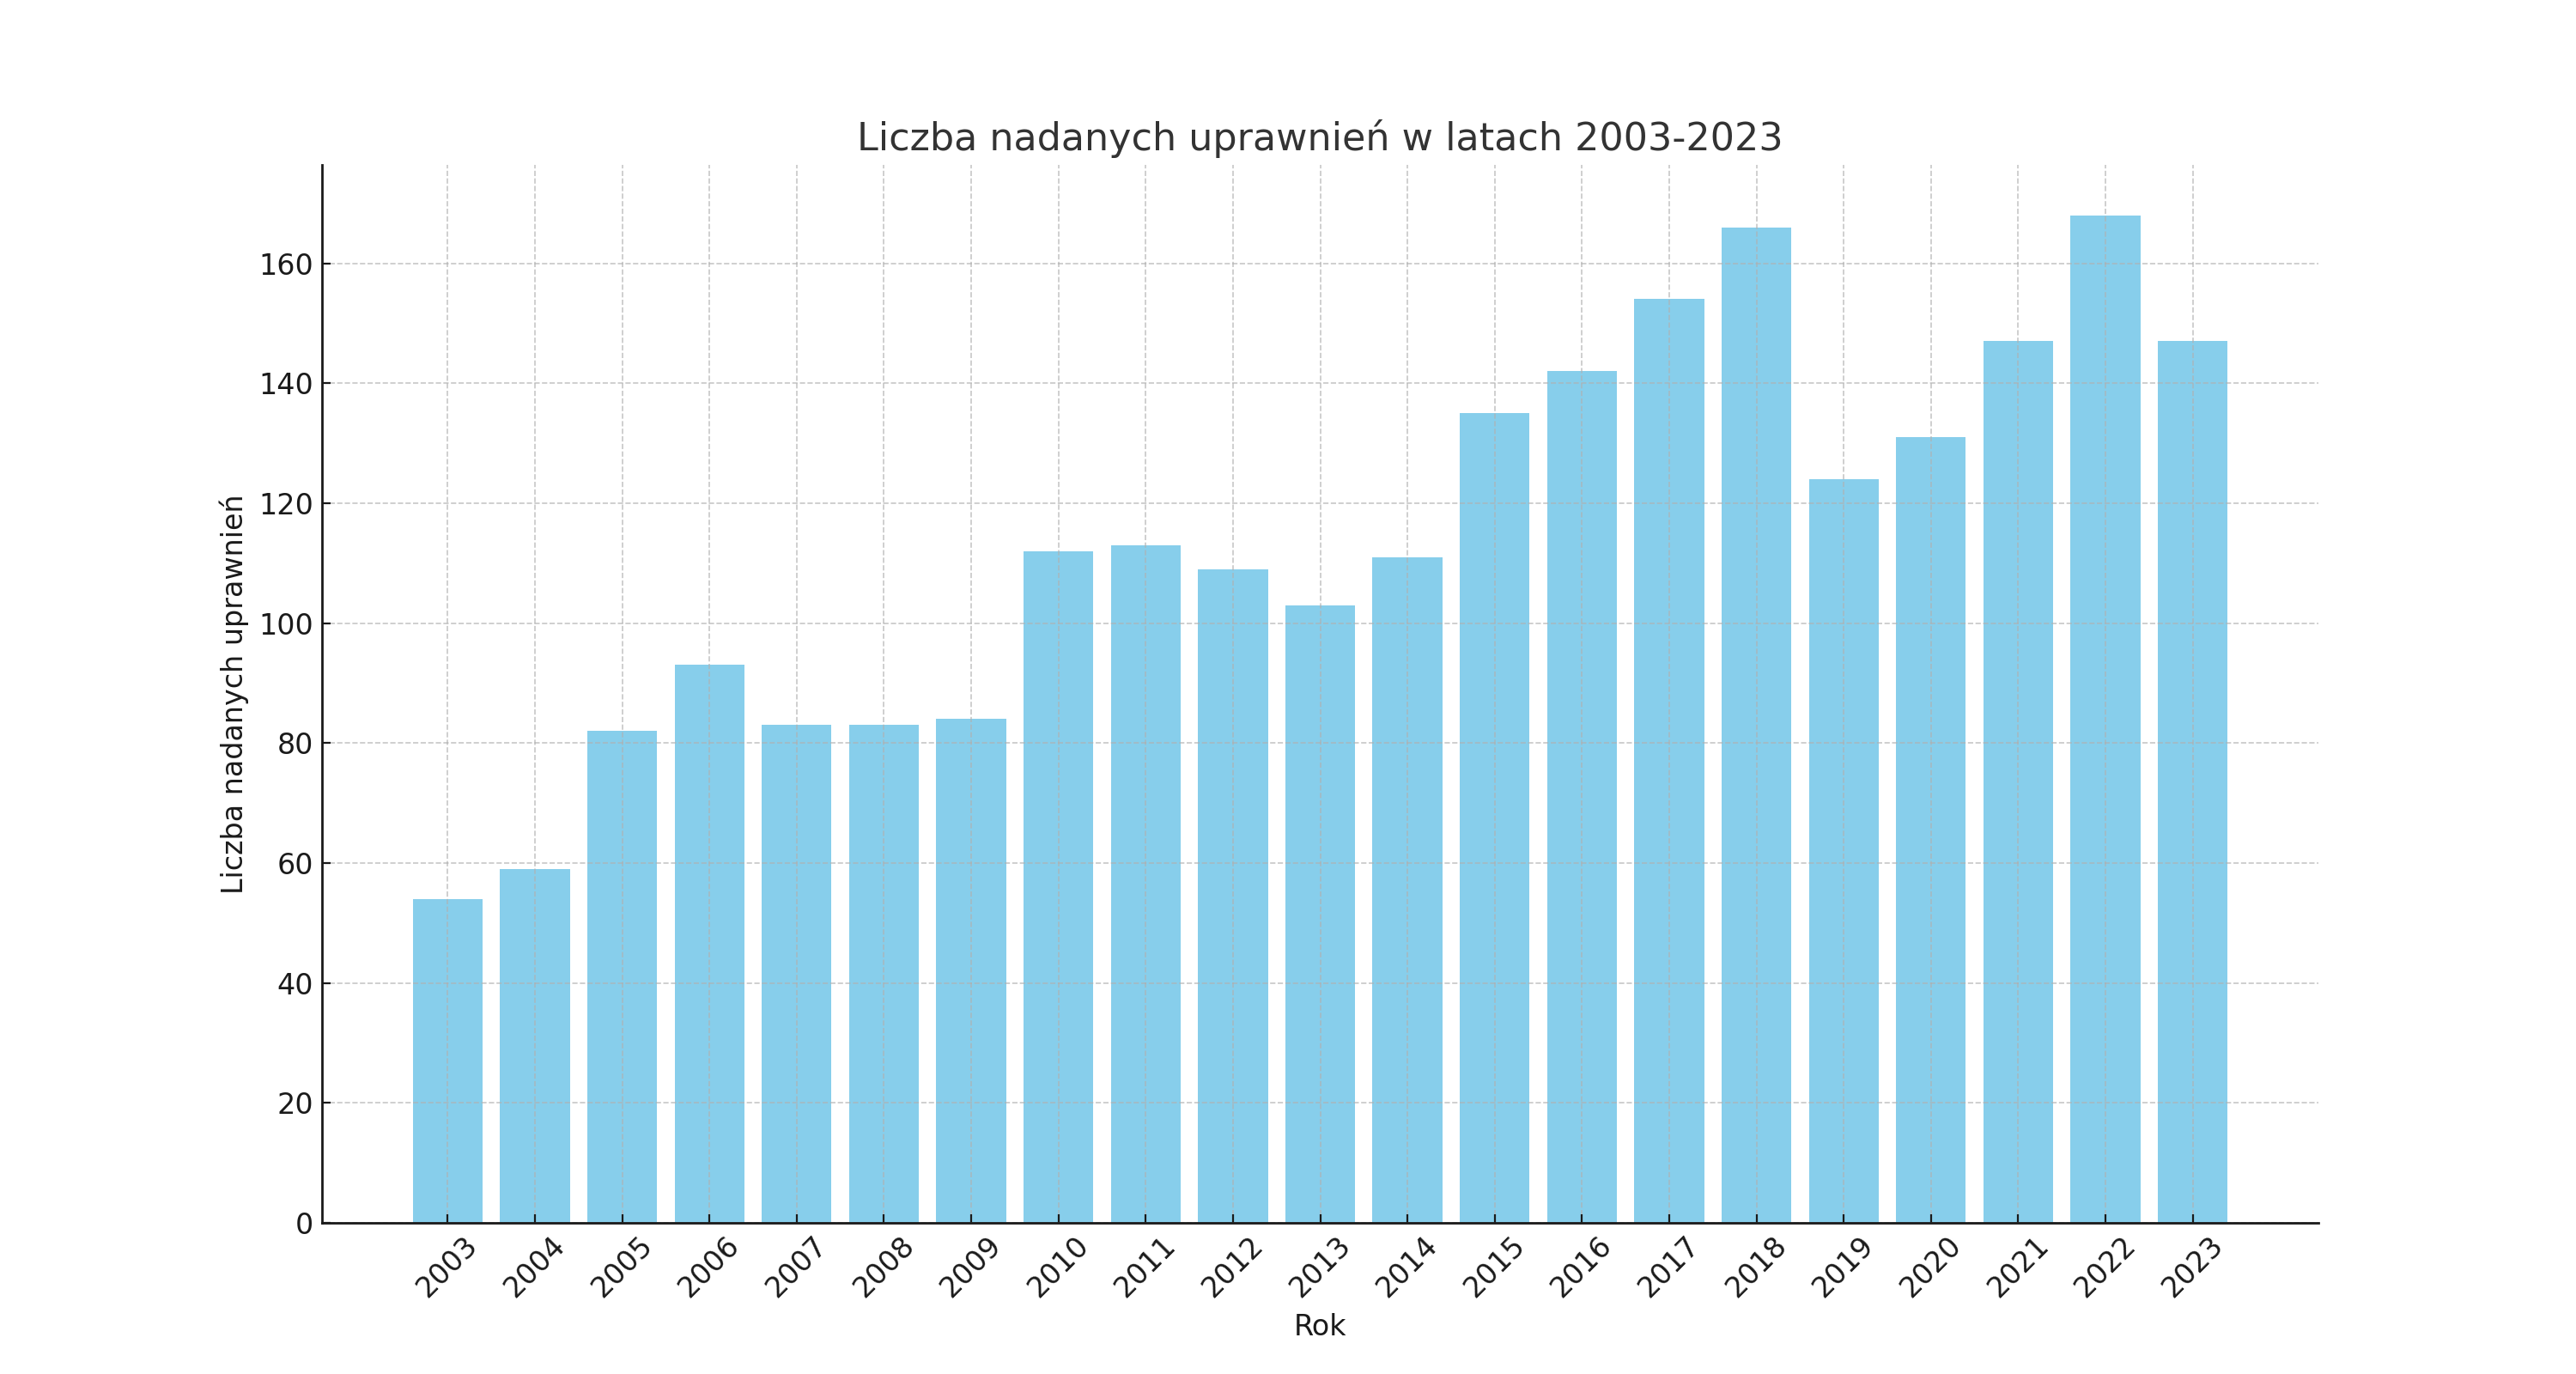 Liczba osób, które zdobyły uprawnienia budowlane w Opolskiej Okręgowej Izbie Inżynierów Budownictwa w latach 2003-2023